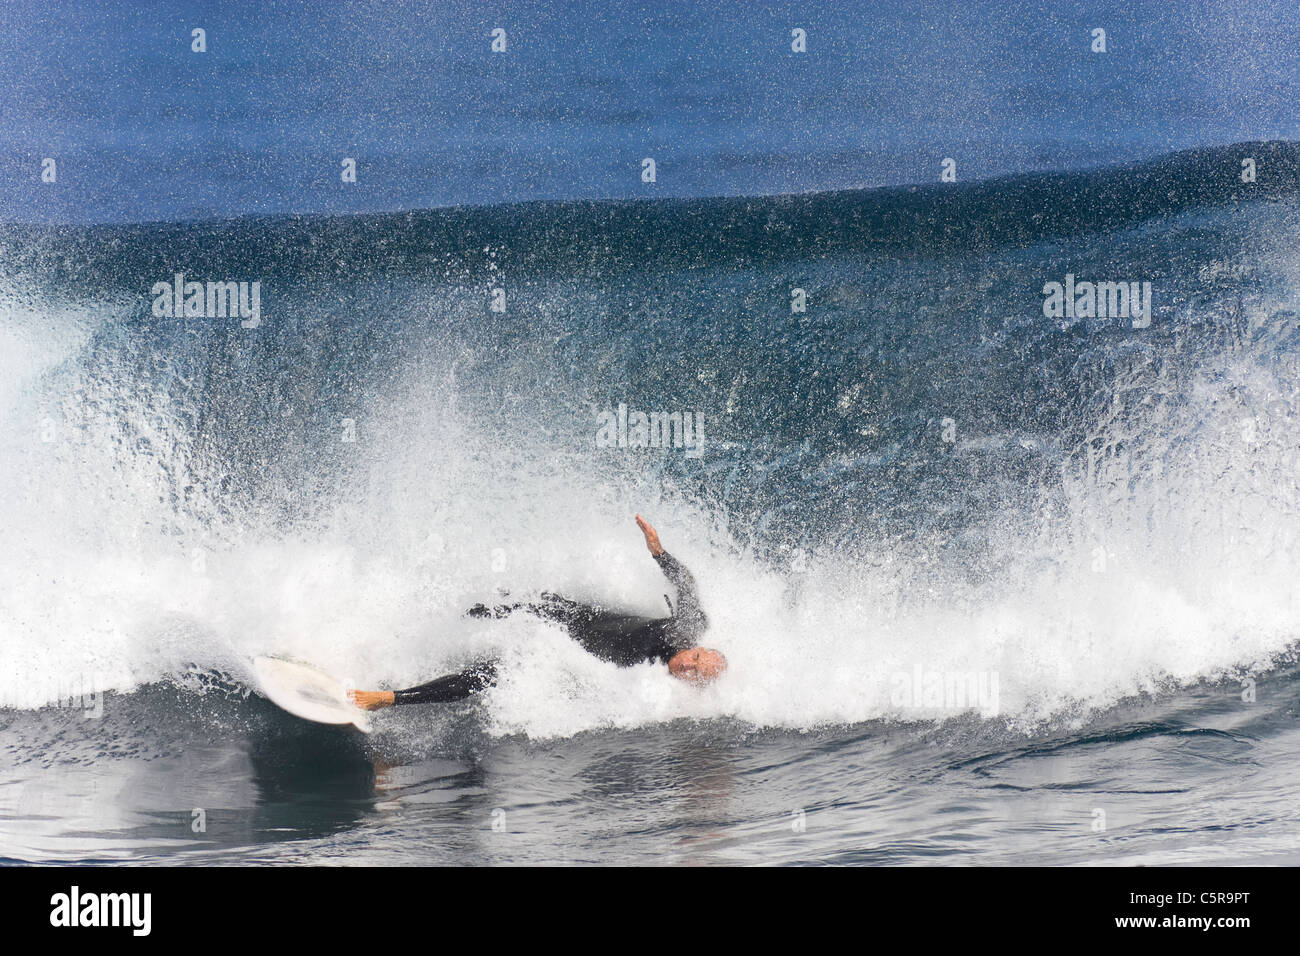 Grosse Vague s'écrase sur le surfer qui a encore un pied sur la planche de surf. Banque D'Images